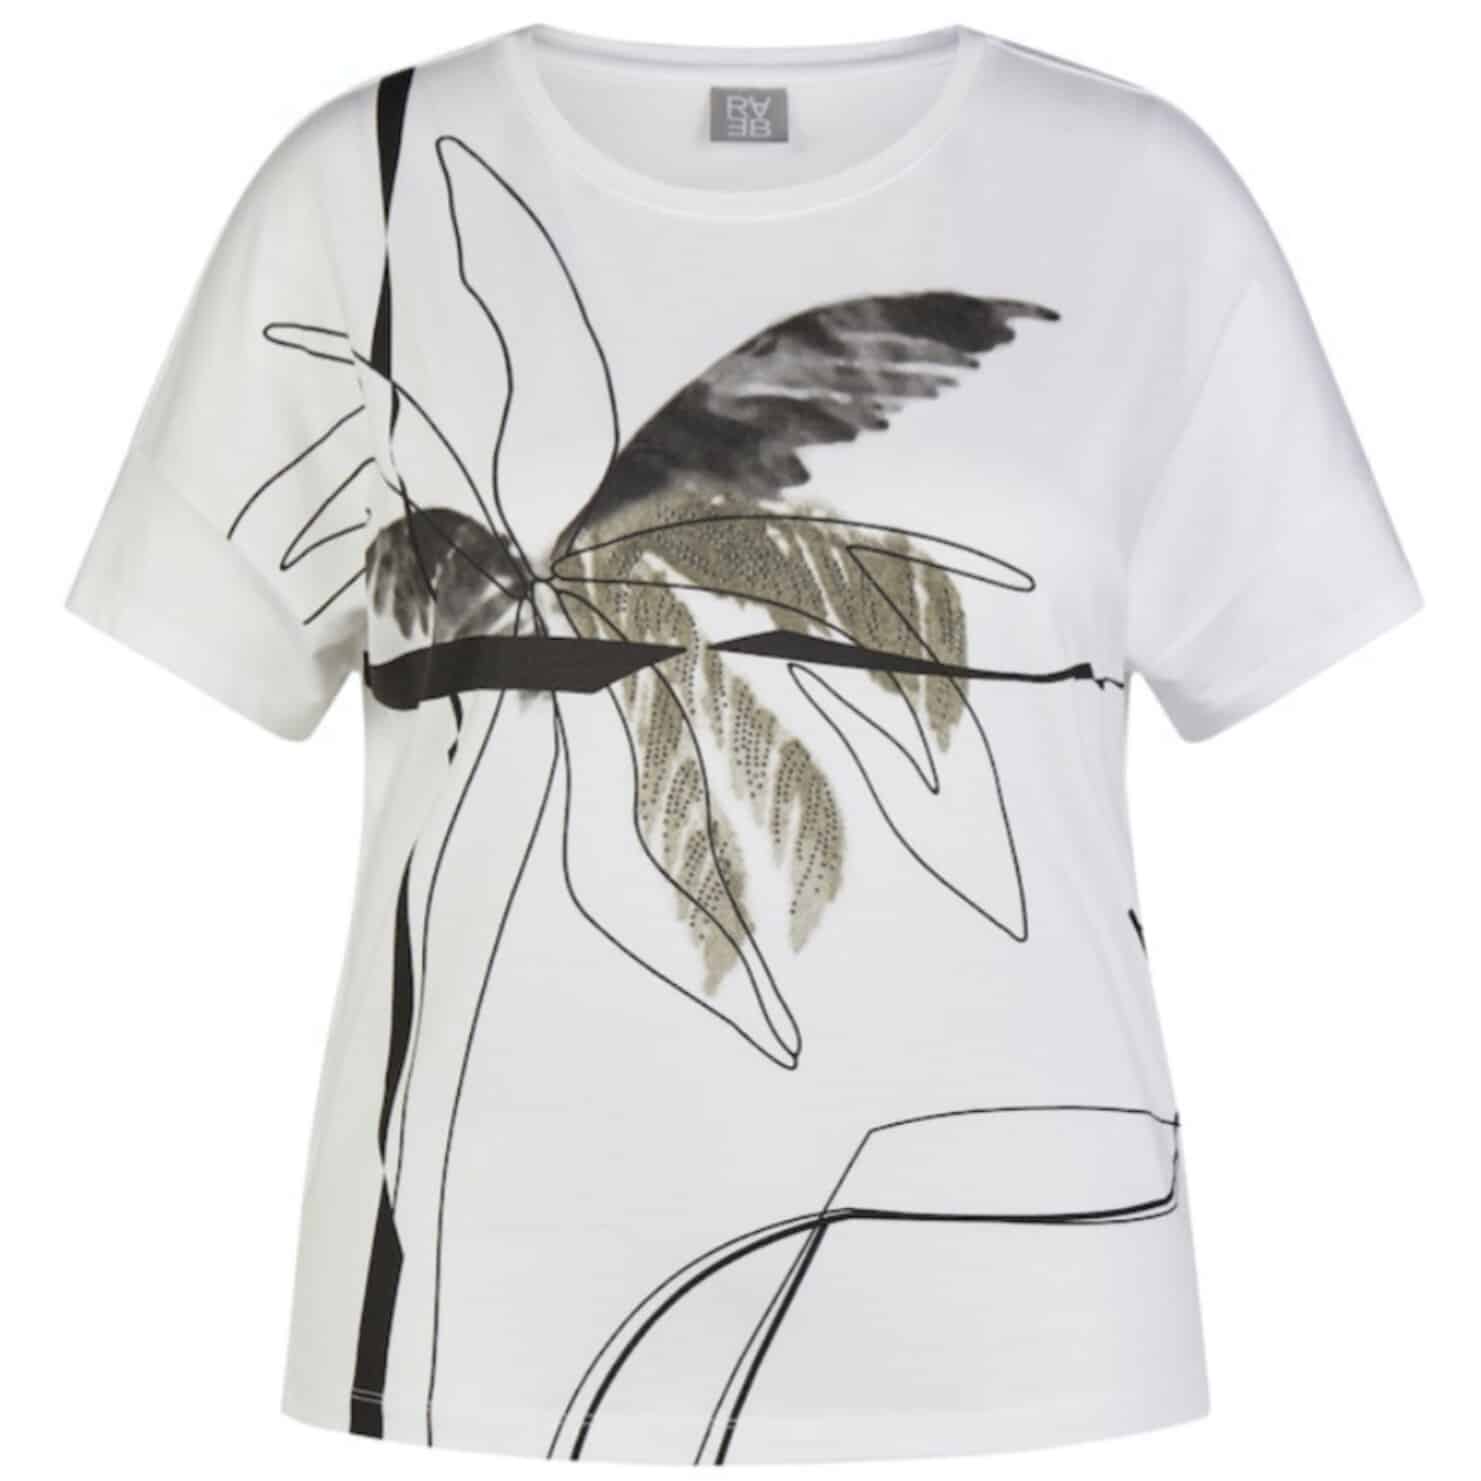 Legeres Shirt mit Frontdruck in leichter Qualität von Rabe Moden Artikel 52-221305, für die modische Frau bei Mode Sabine Lemke in Winnenden oder im Onlineshop einkaufen